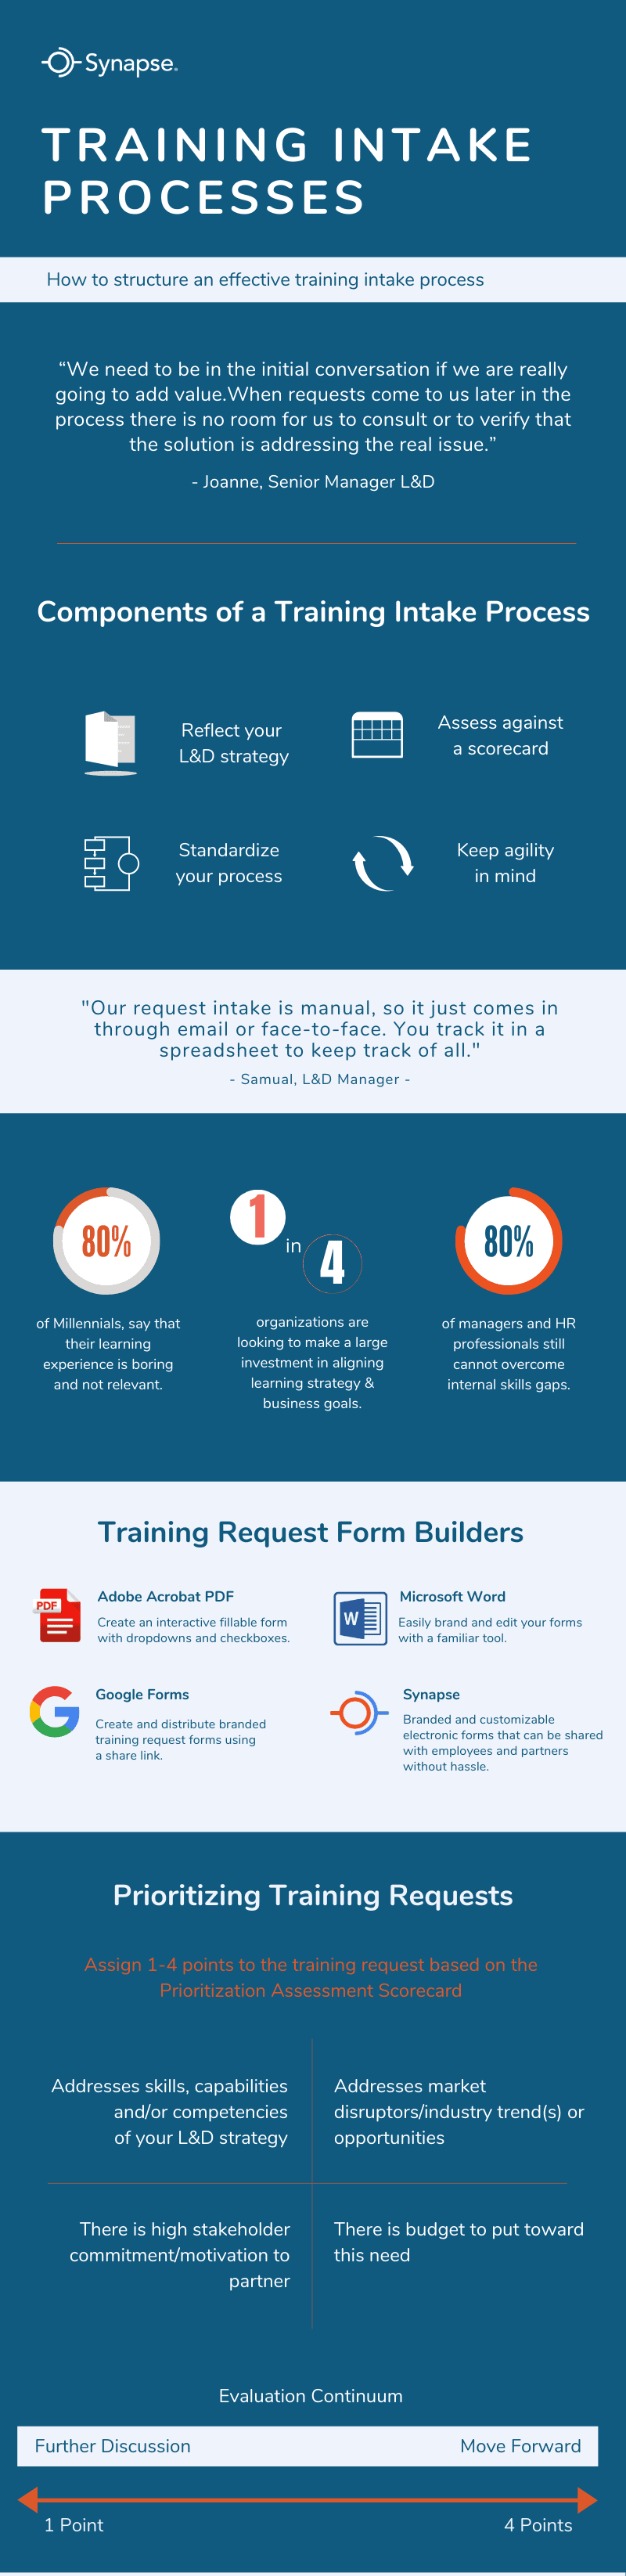 prioritizing training requests